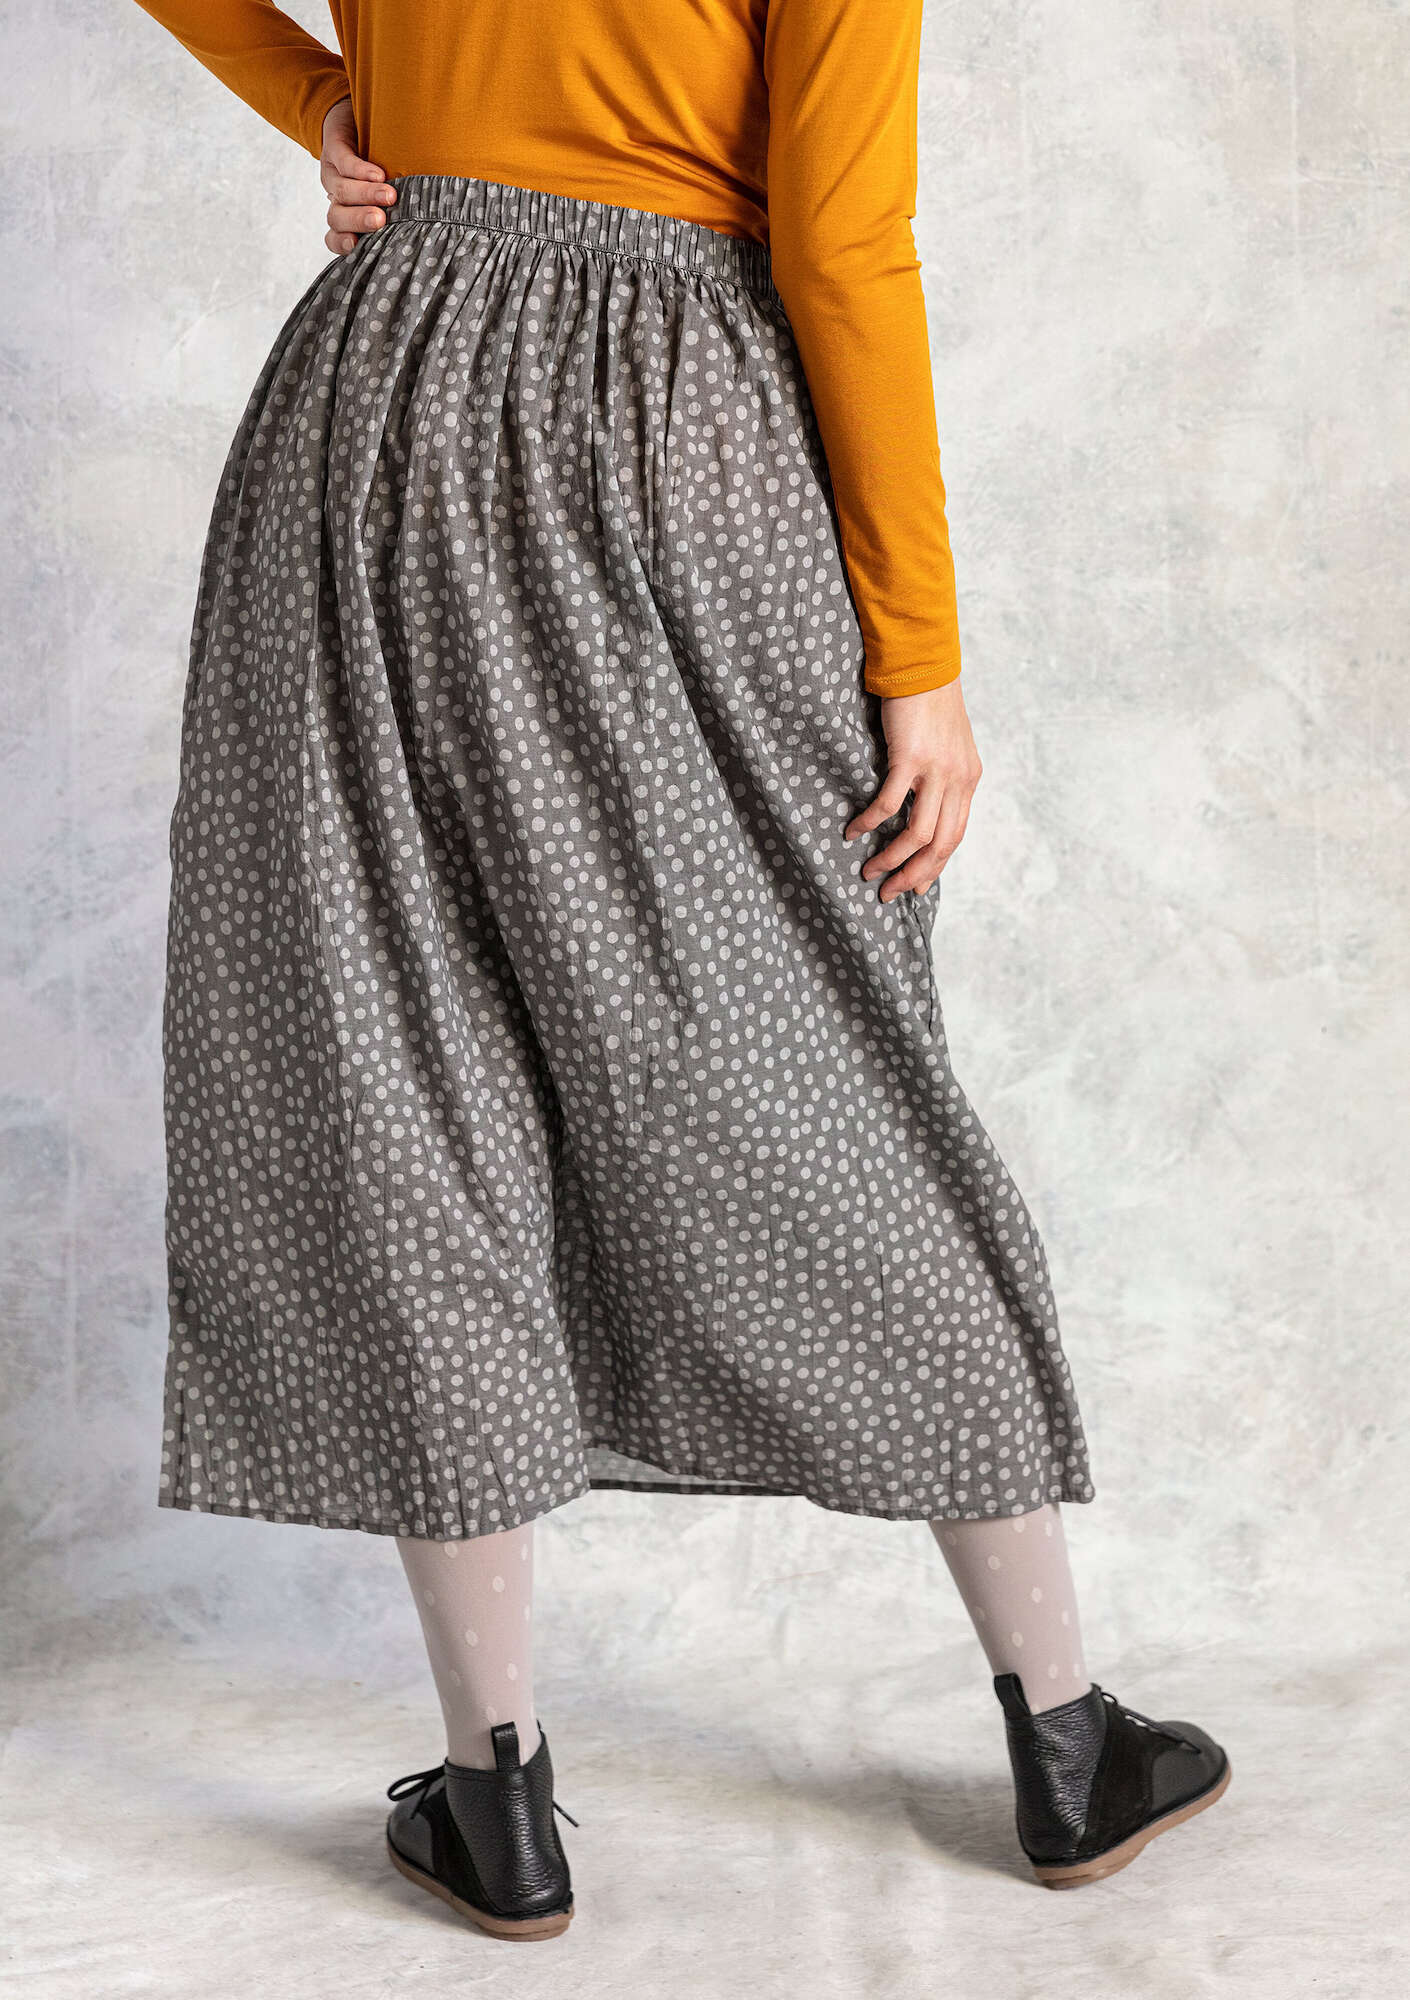 Vævet nederdel  Alice  i økologisk bomuld jerngrå/mønstret thumbnail